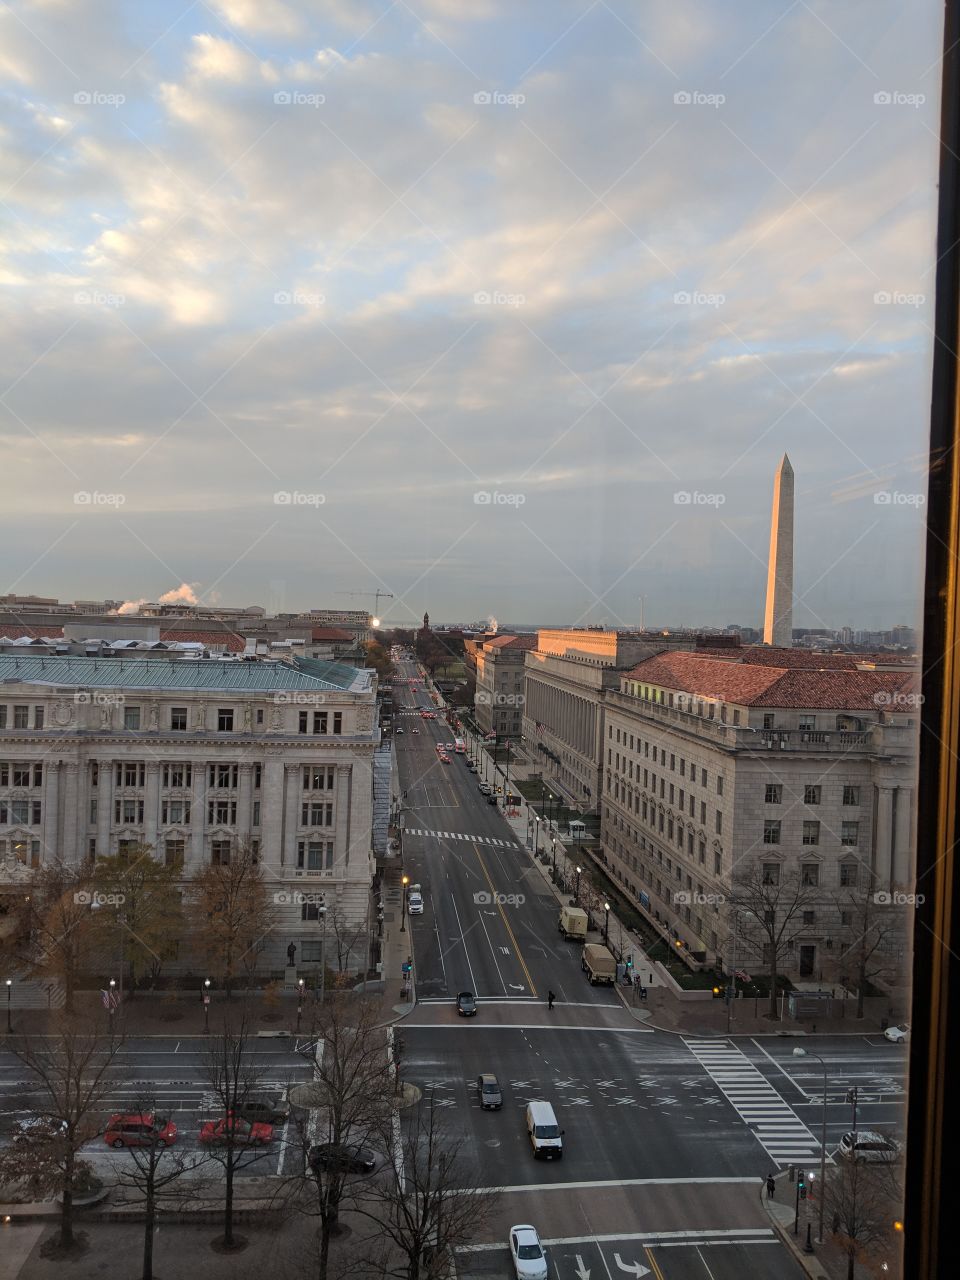 Washington, DC at dusk